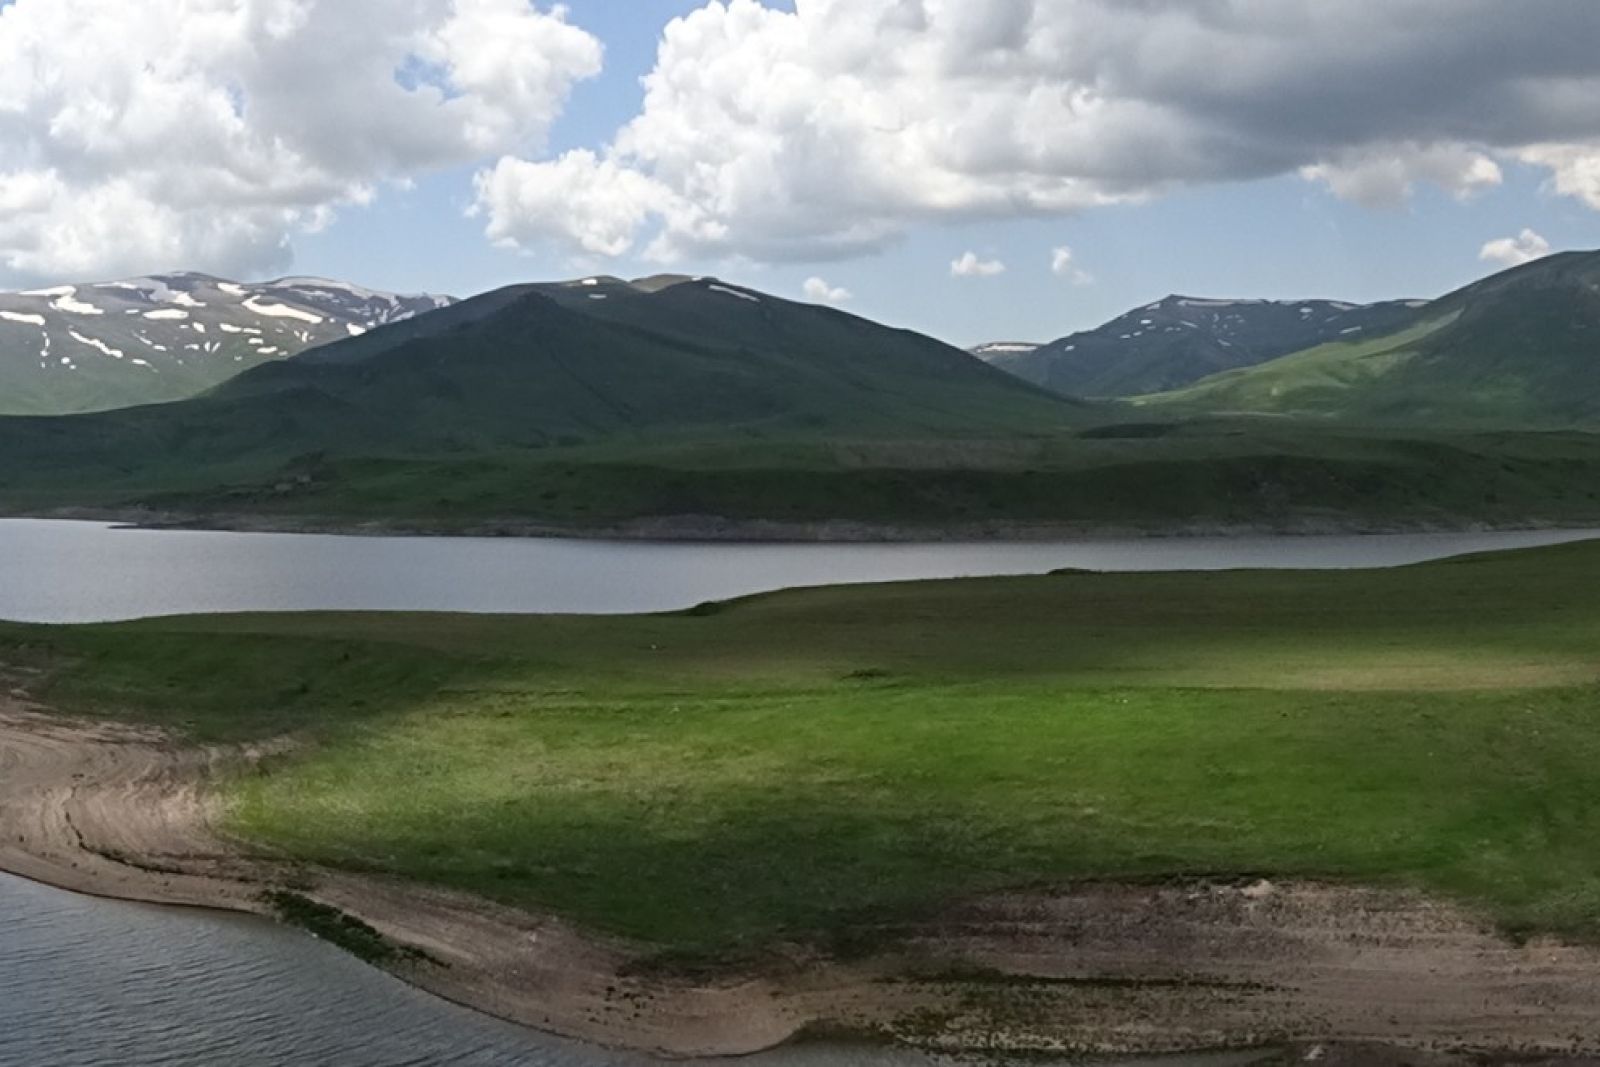 Staiusee im Hochland von Armenien